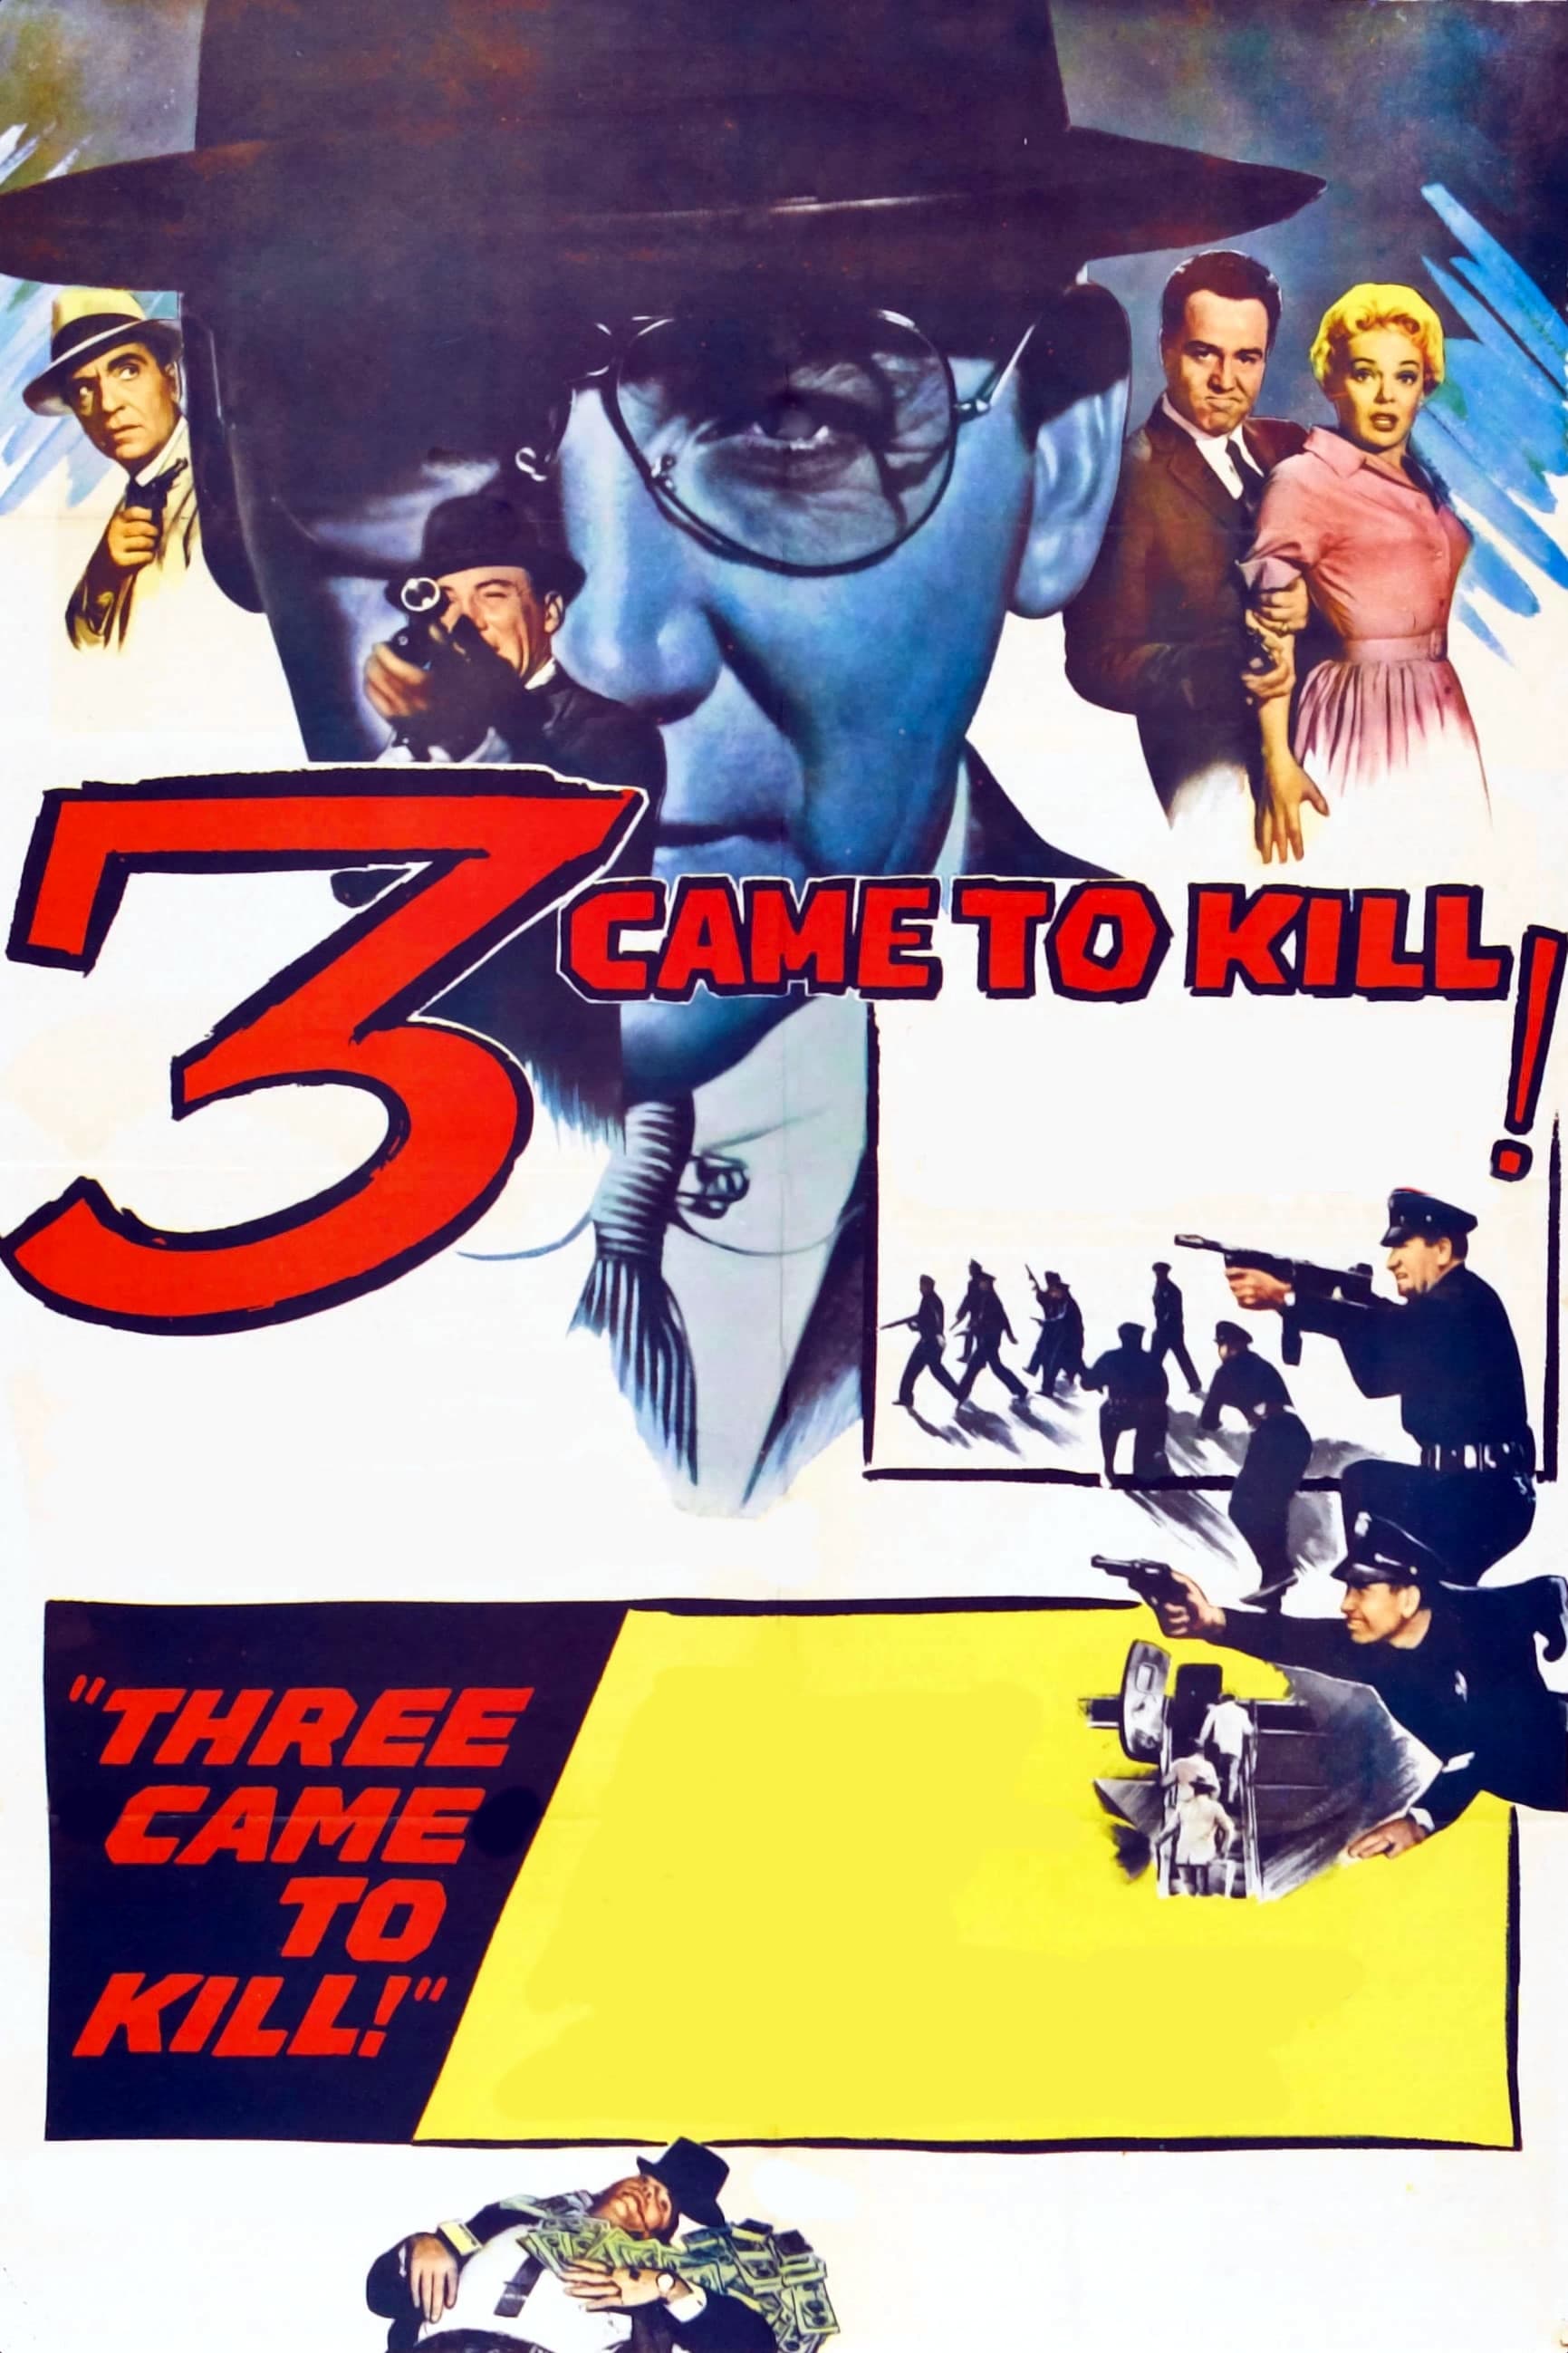 Three Came to Kill (1960)